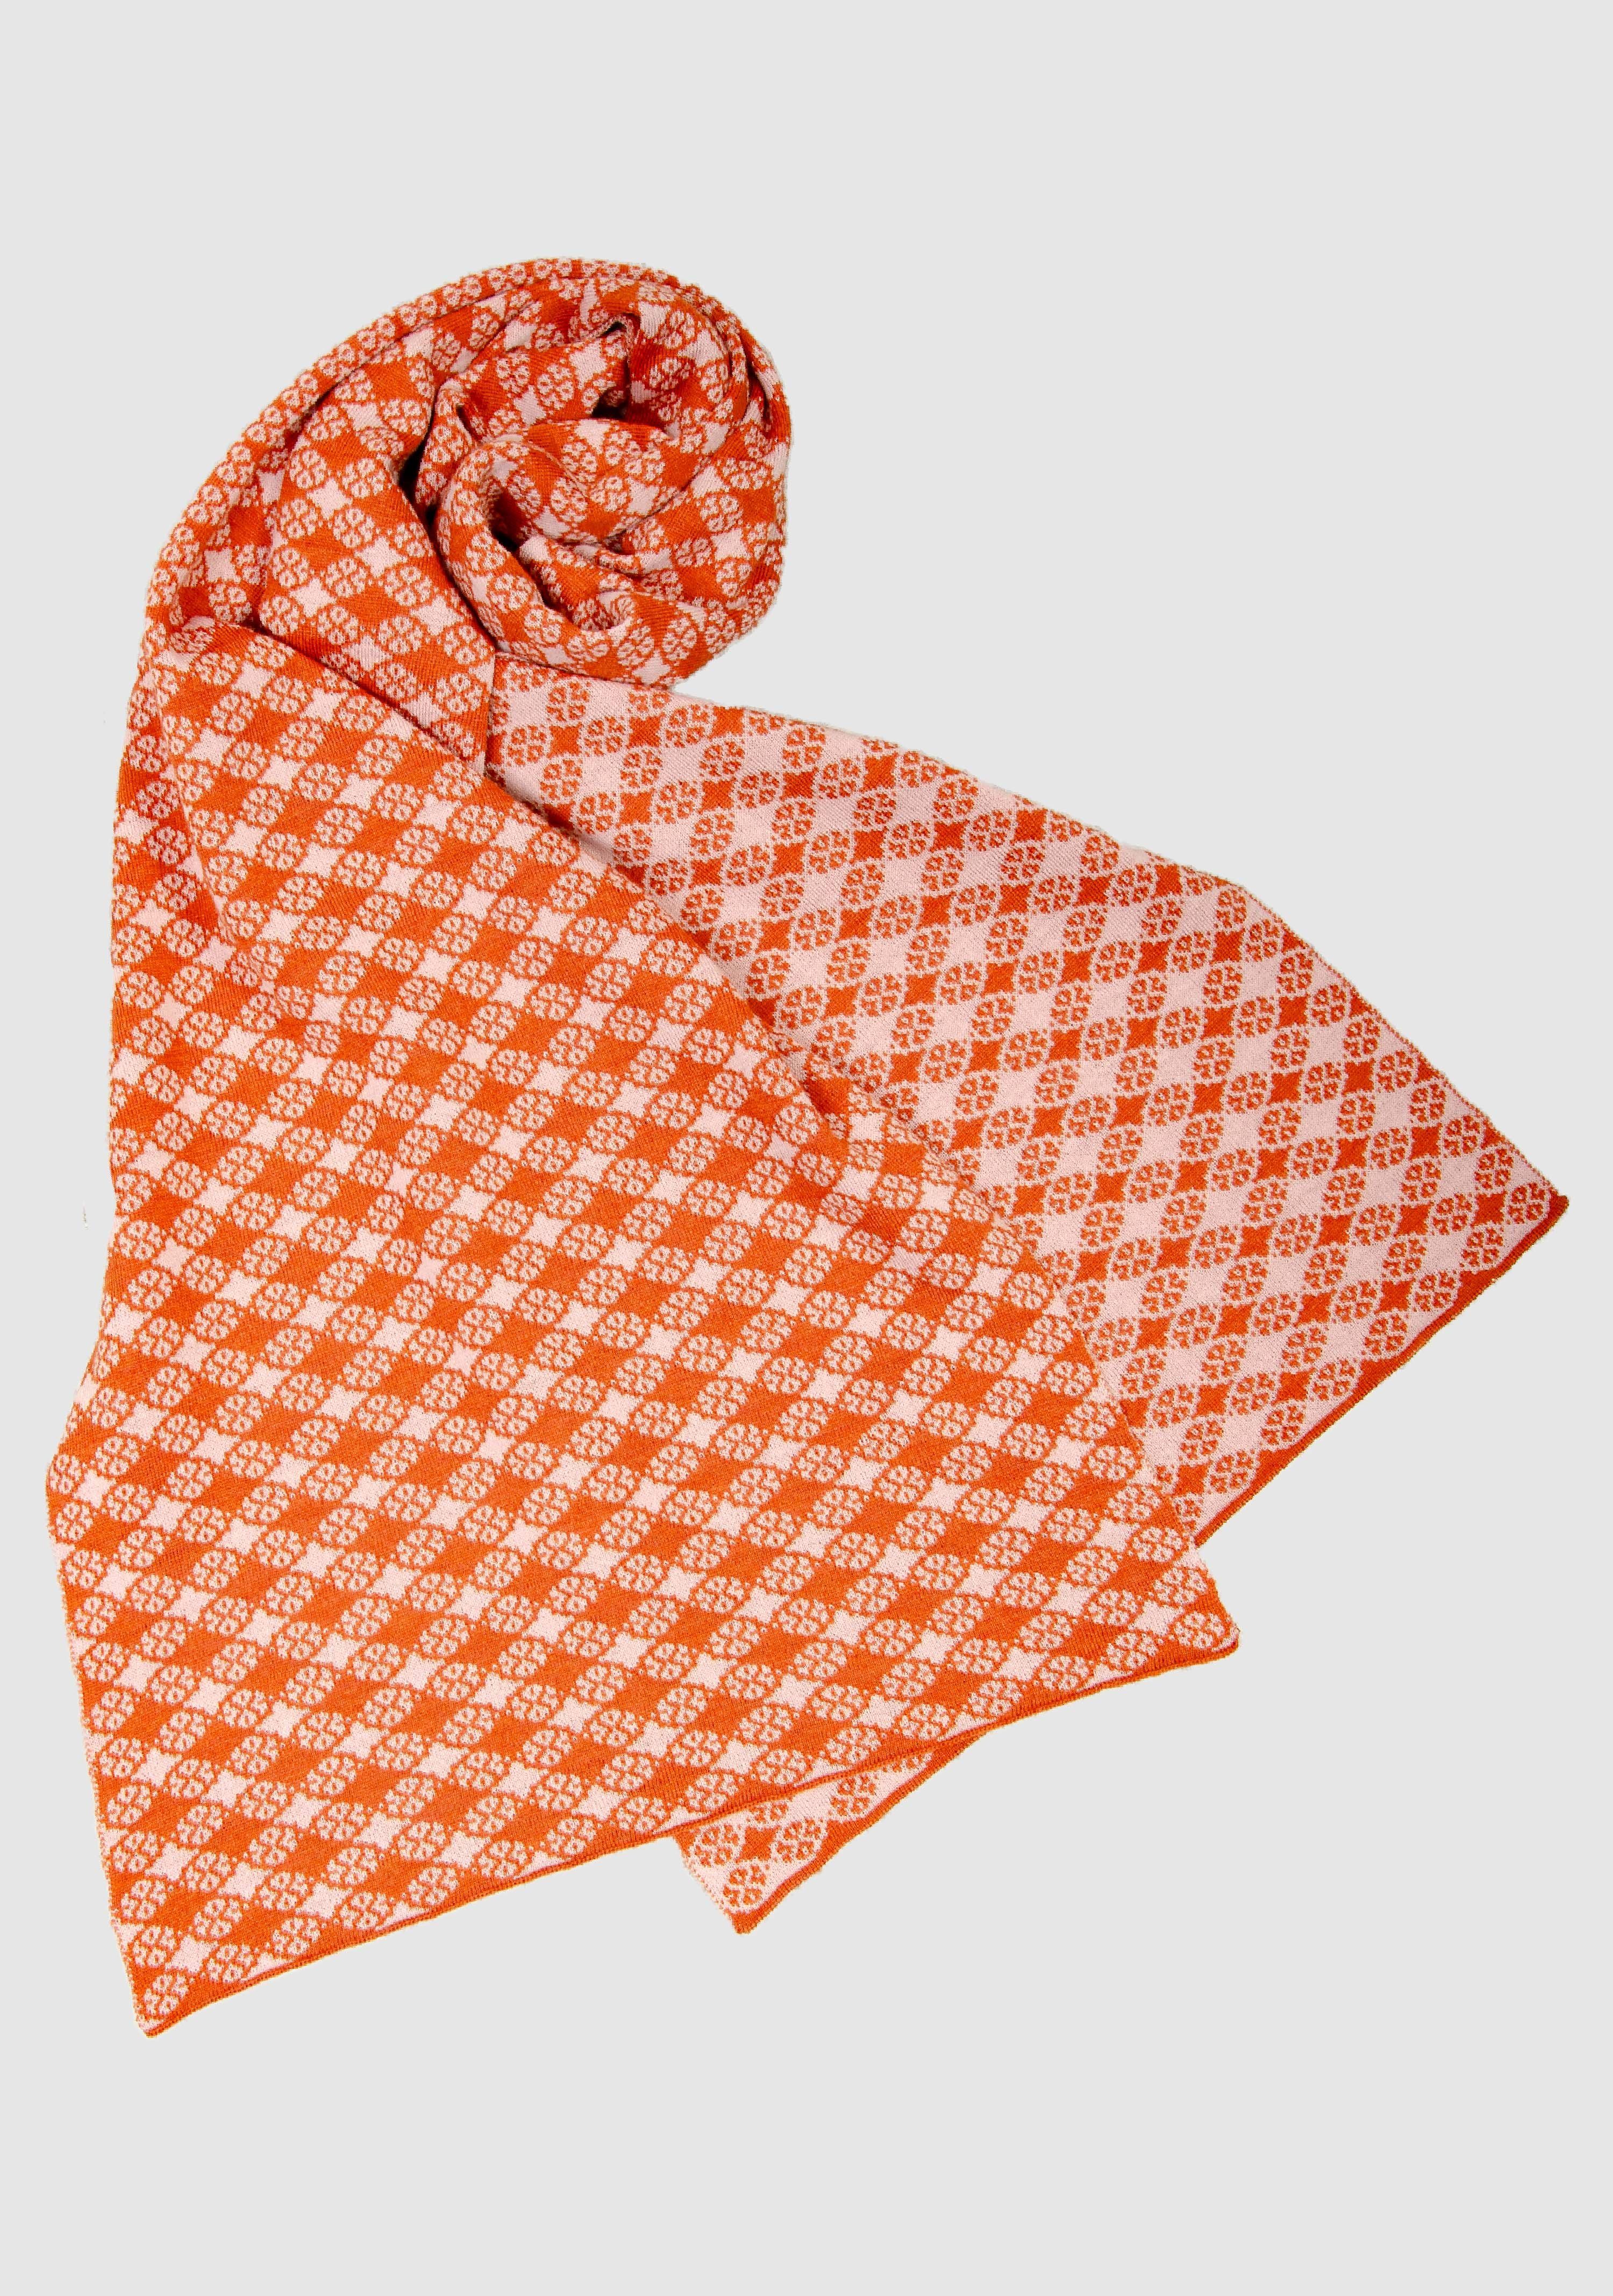 LANARTO slow extrasoft Wollschal fashion in Blütenkaro Schal orange_rosa Merino Farben 100% schönen